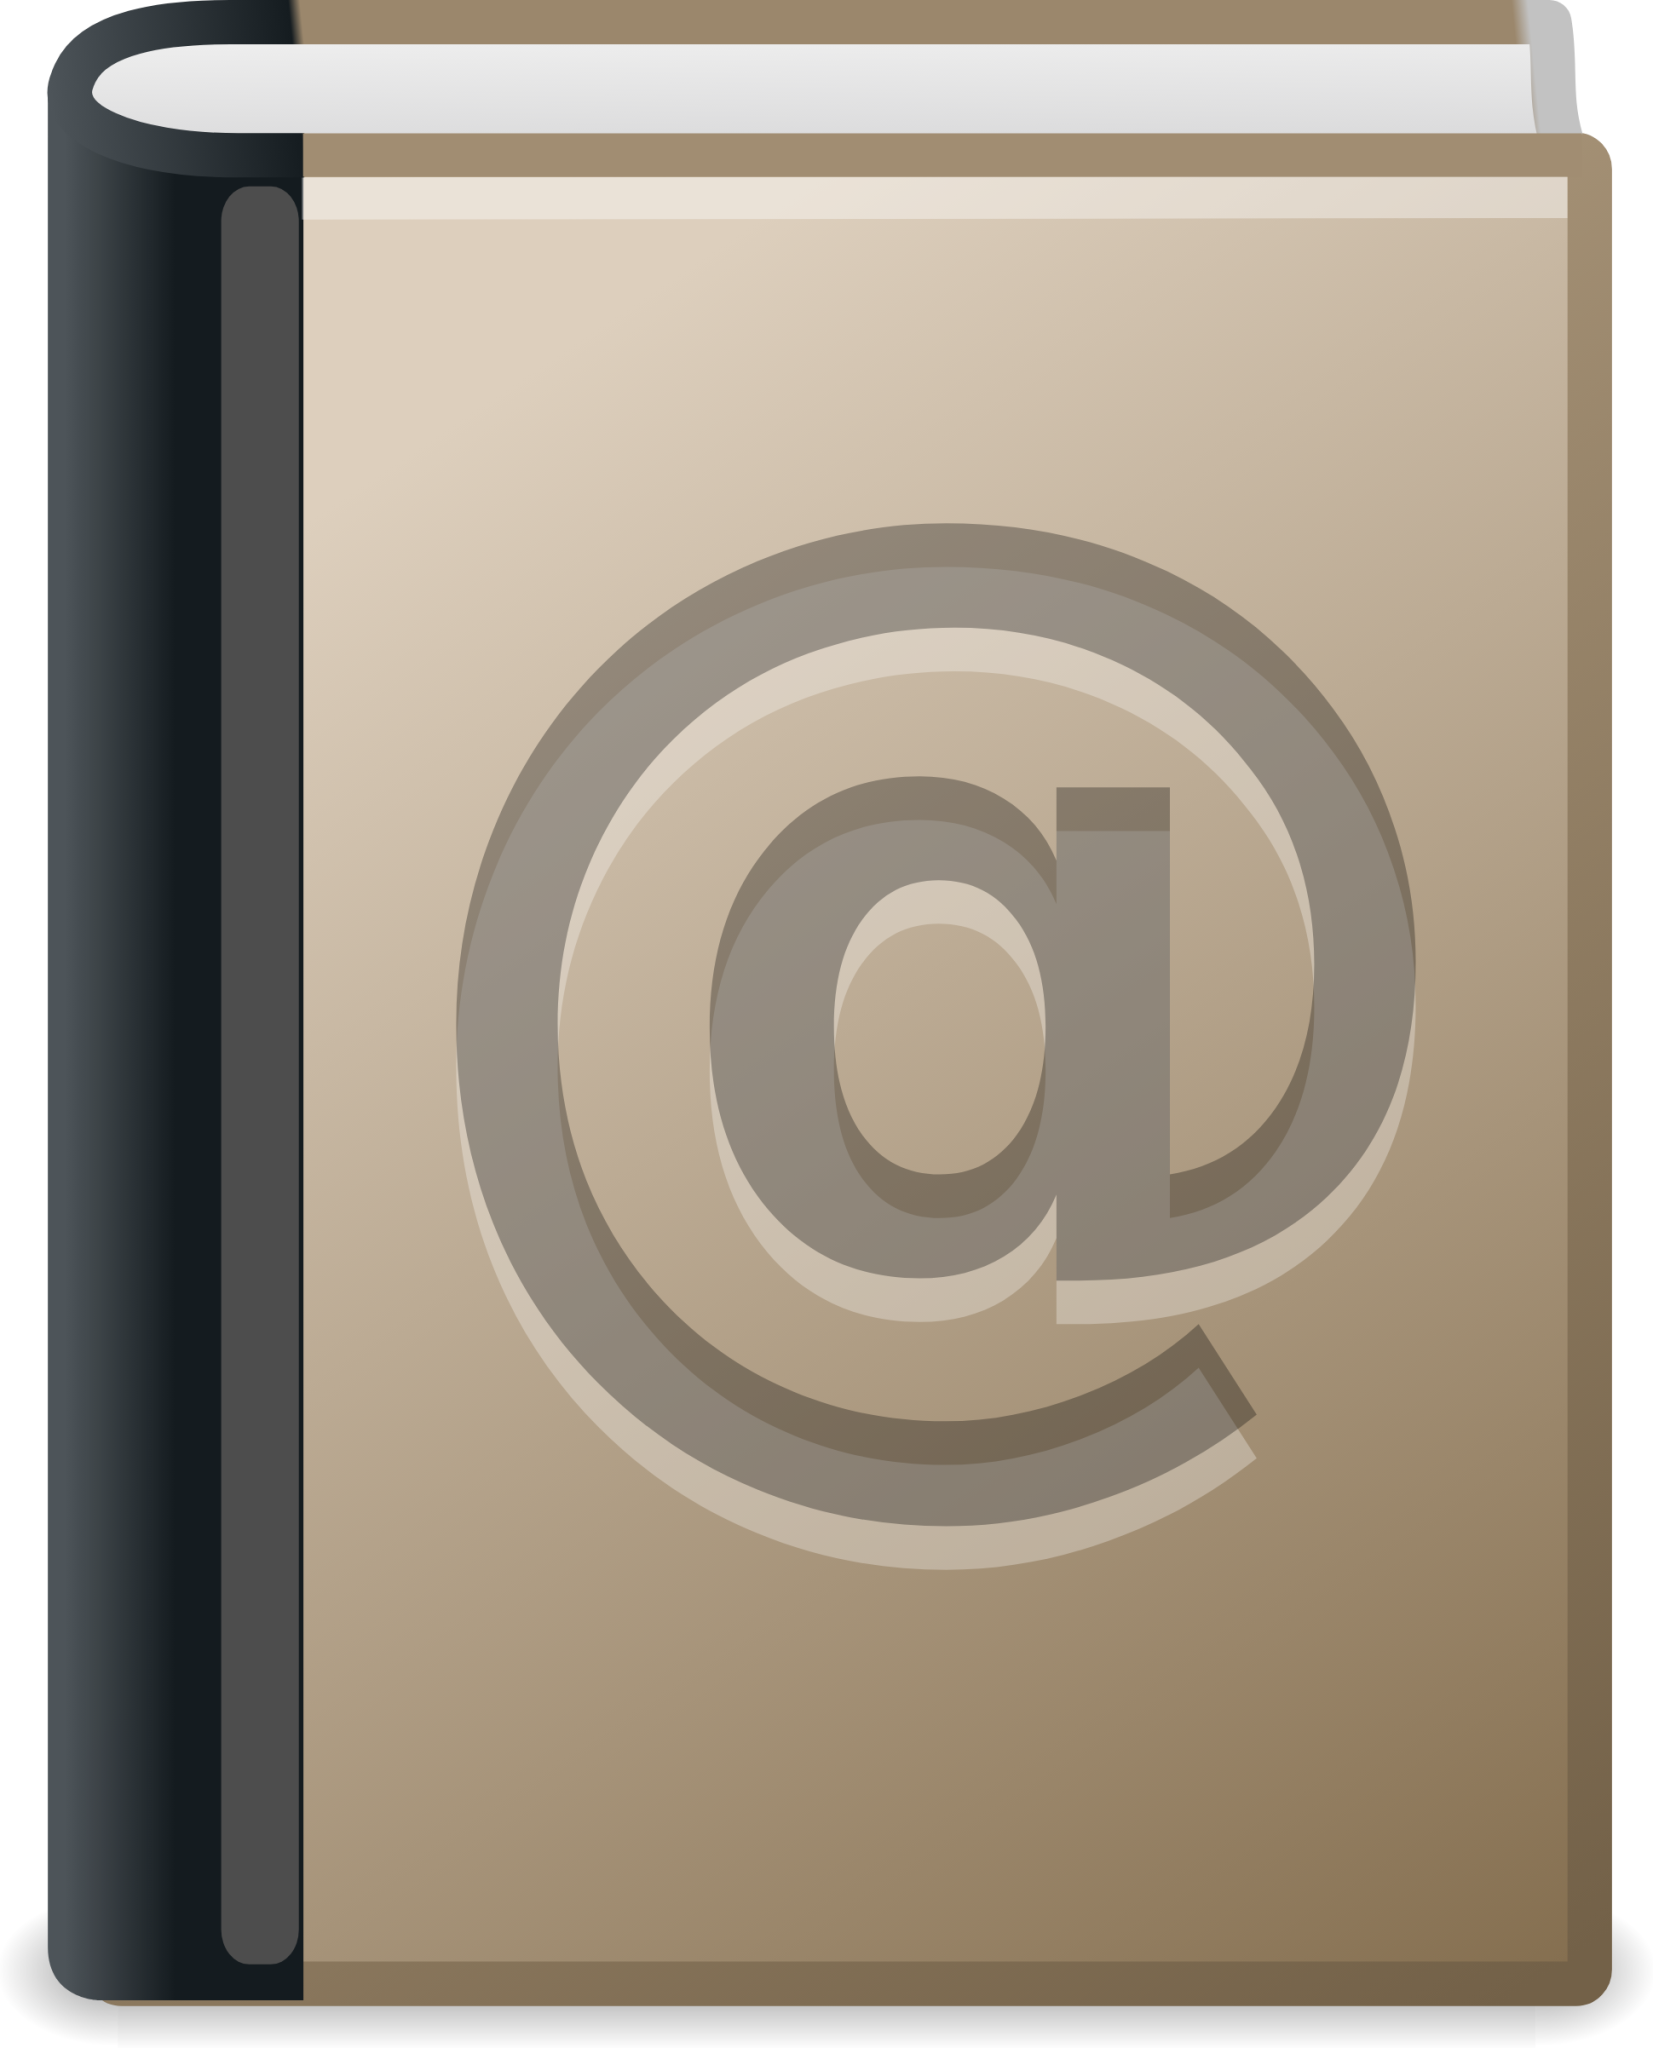 addressbook icon